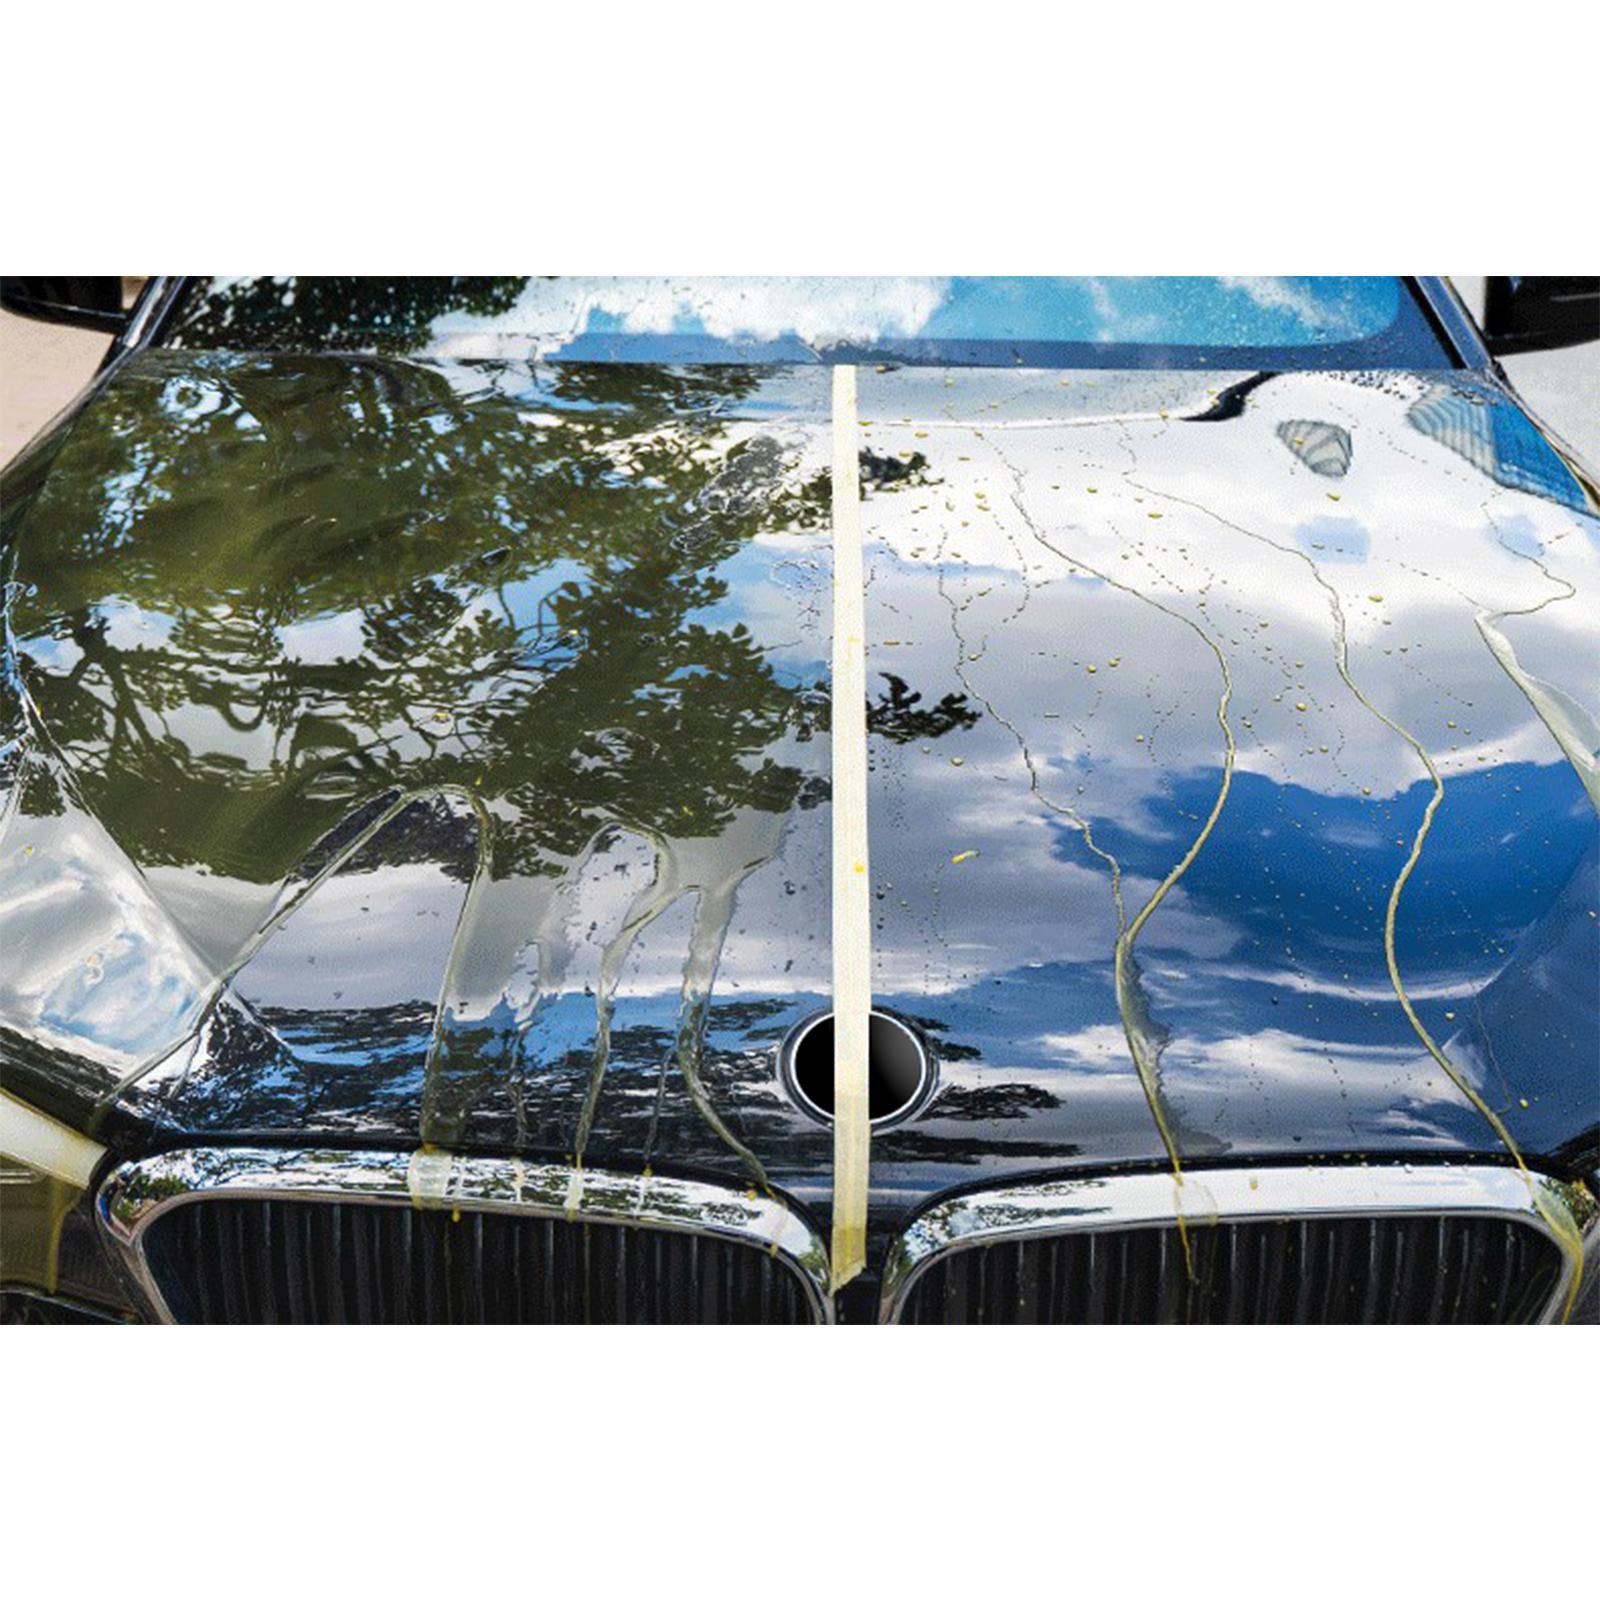 Cars Ceramic Coating Spray Quick Coat Hydrophobic Anti Scratch 300ml